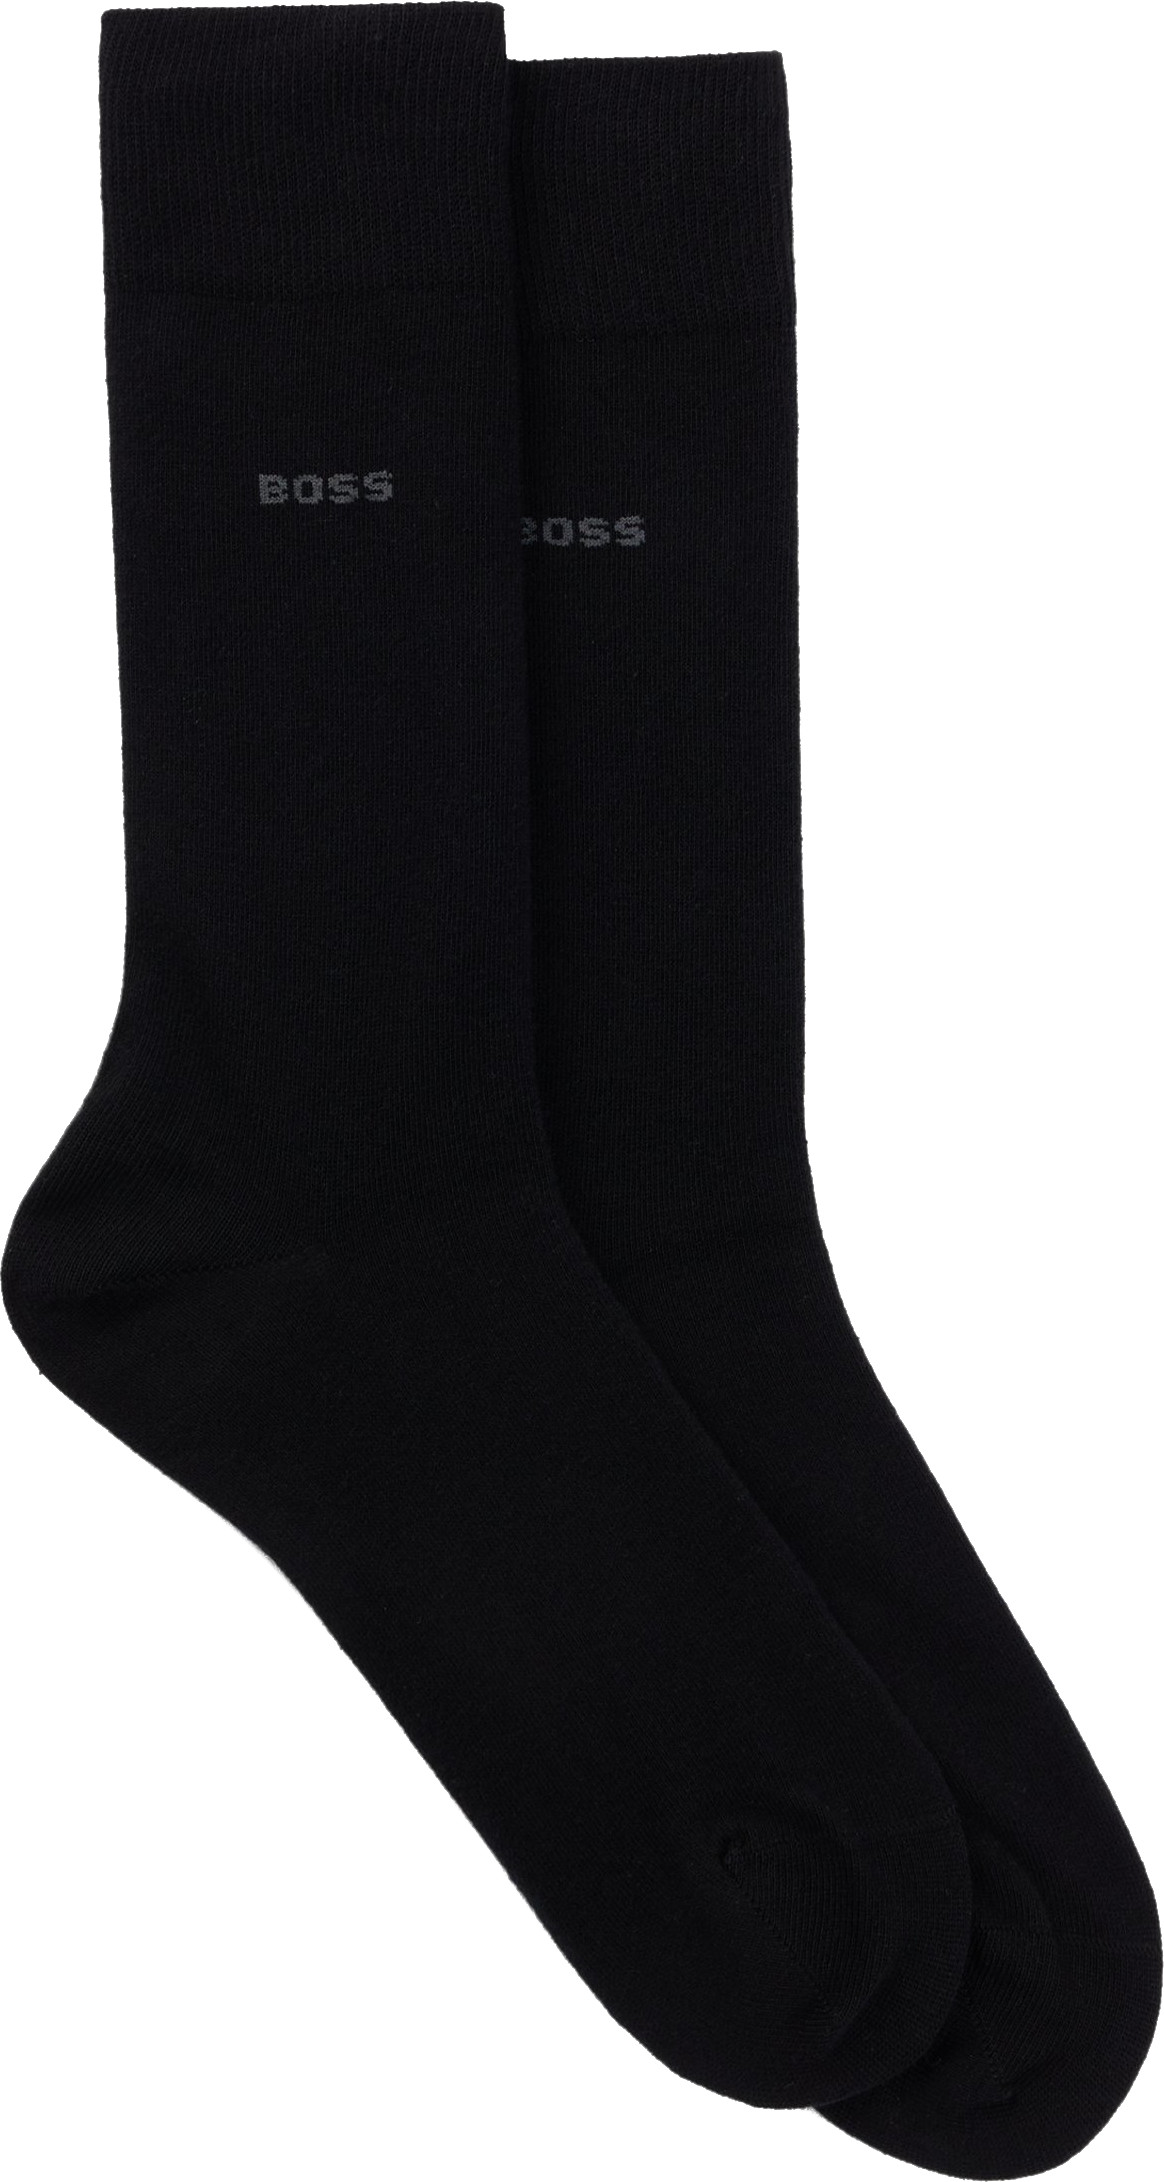 Hugo Boss 2 PACK - pánské ponožky BOSS 50516616-001 43-46